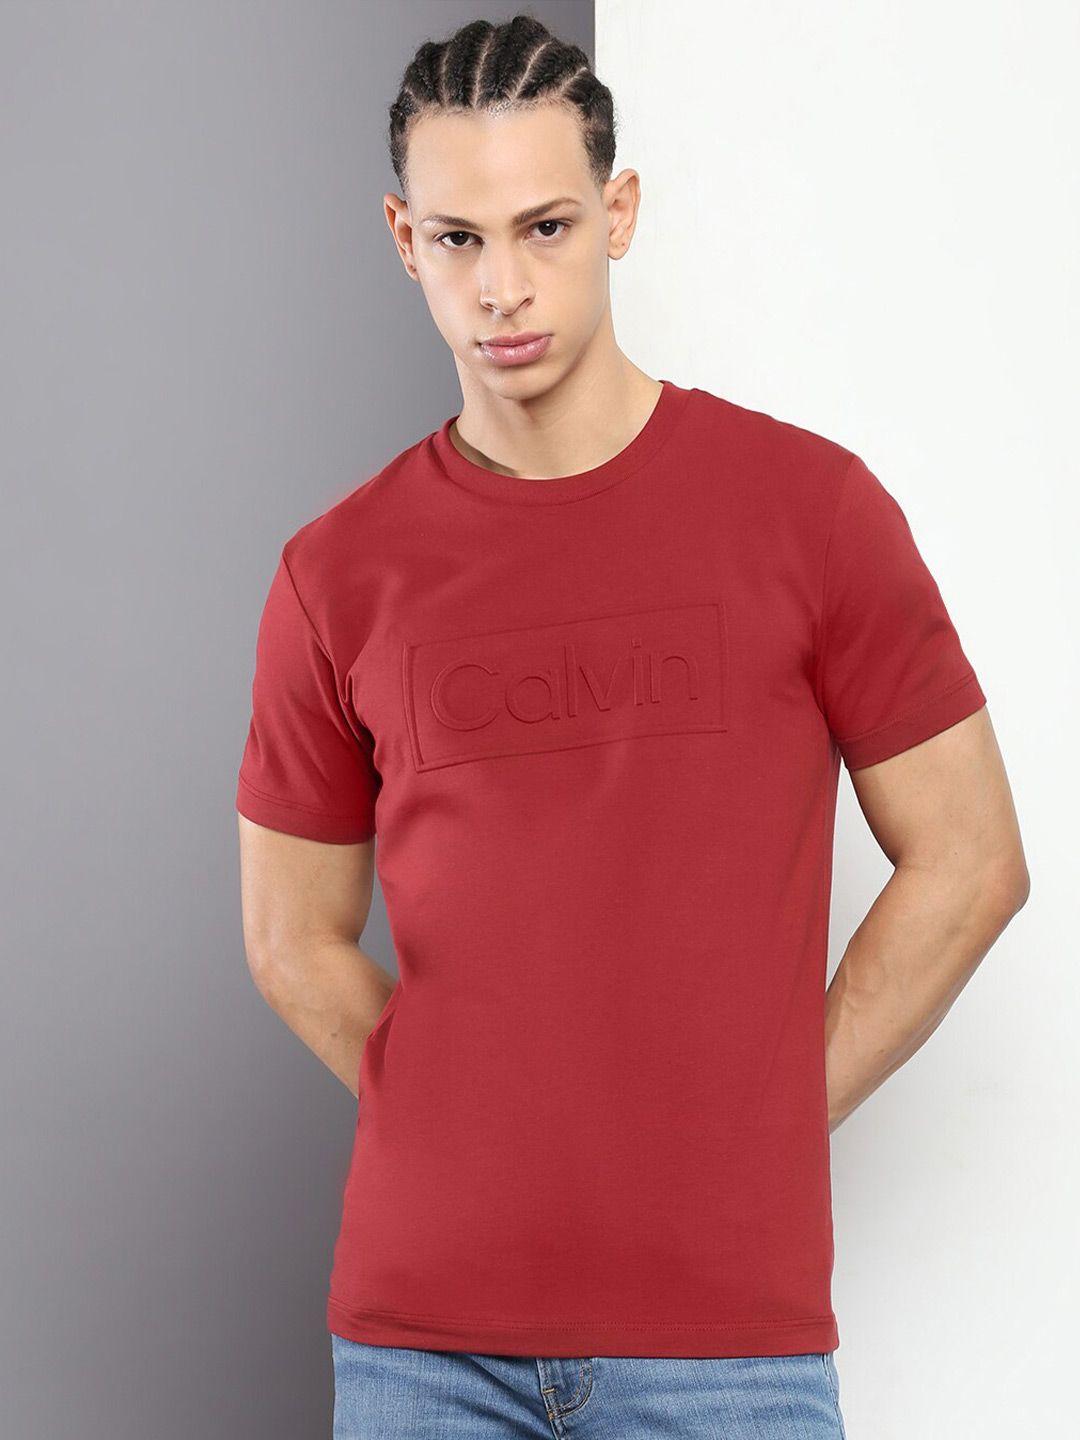 calvin klein jeans round neck short sleeve slim fit t-shirt